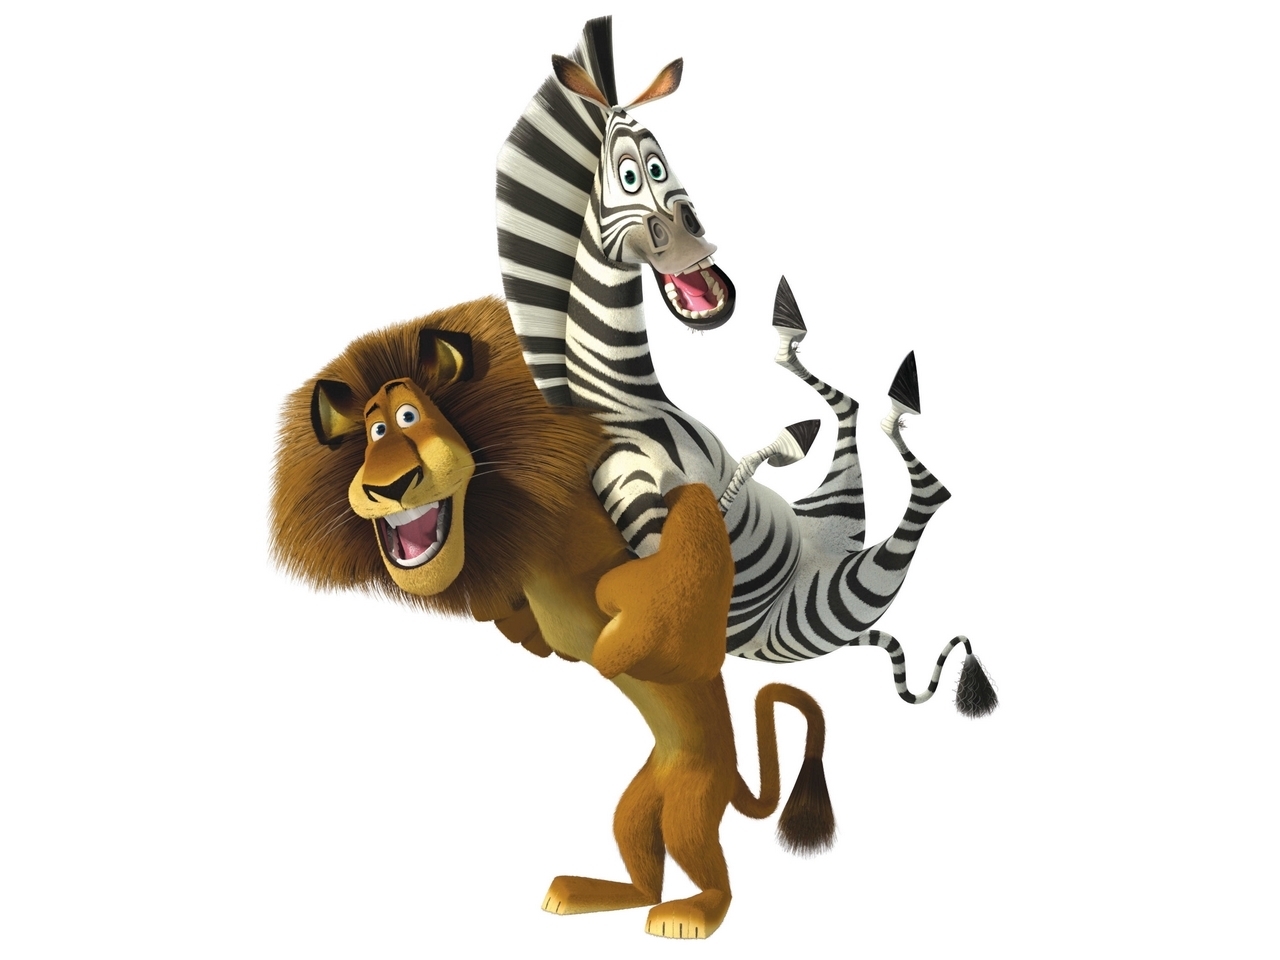 Скачать картинку Мадагаскар (Madagascar), Мультфильмы в телефон бесплатно.